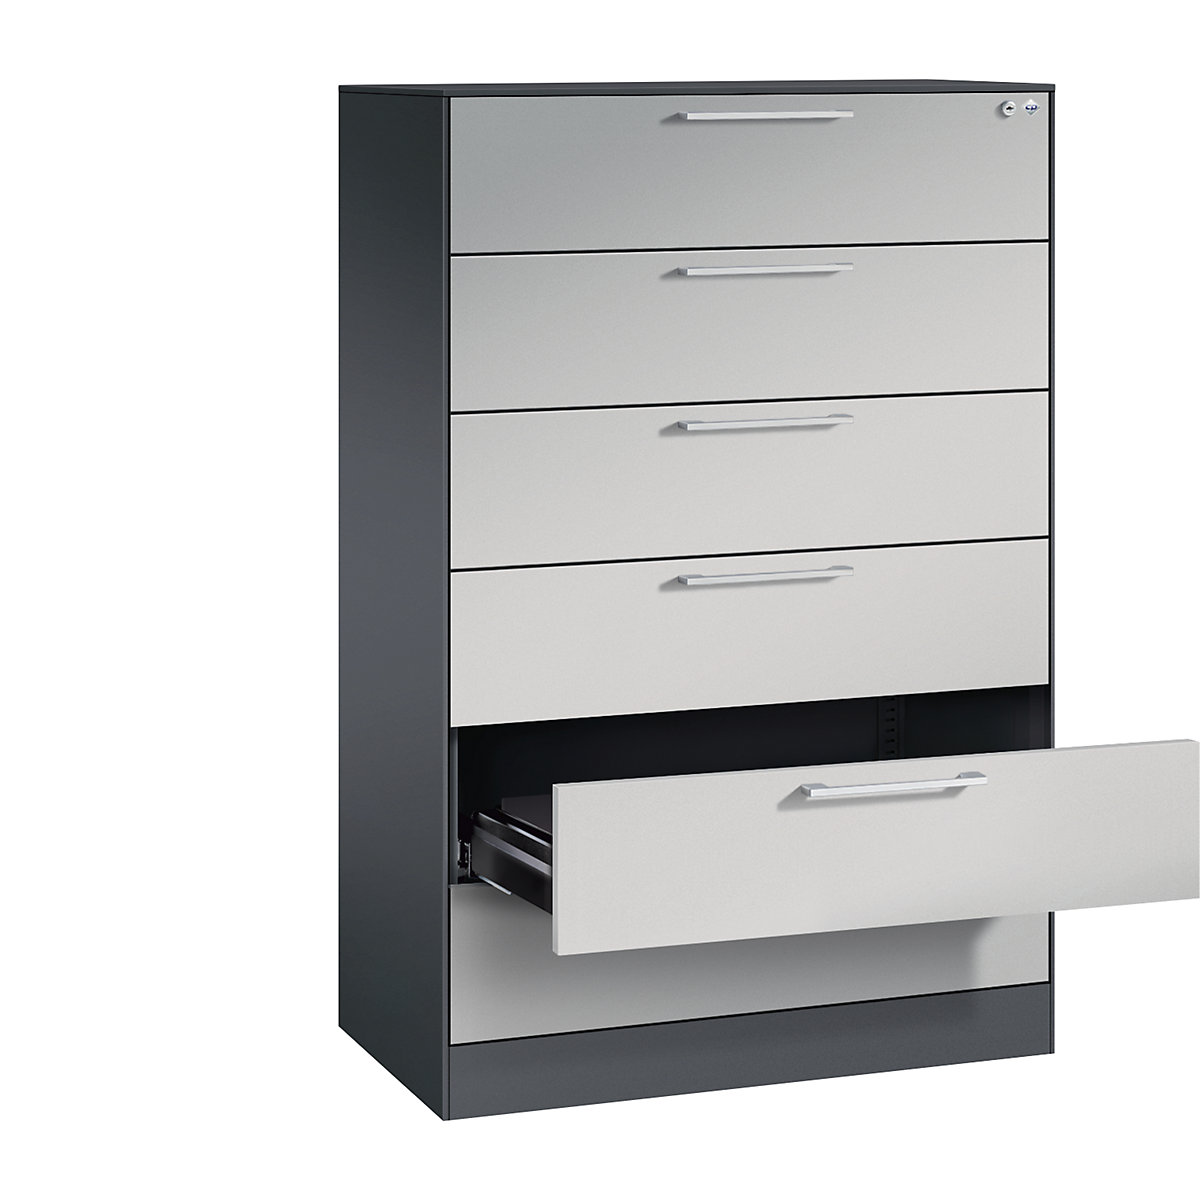 Fișier ASISTO – C+P, înălțime 1292 mm, cu 6 sertare, DIN A5 orizontal, gri negru/alb aluminiu-7